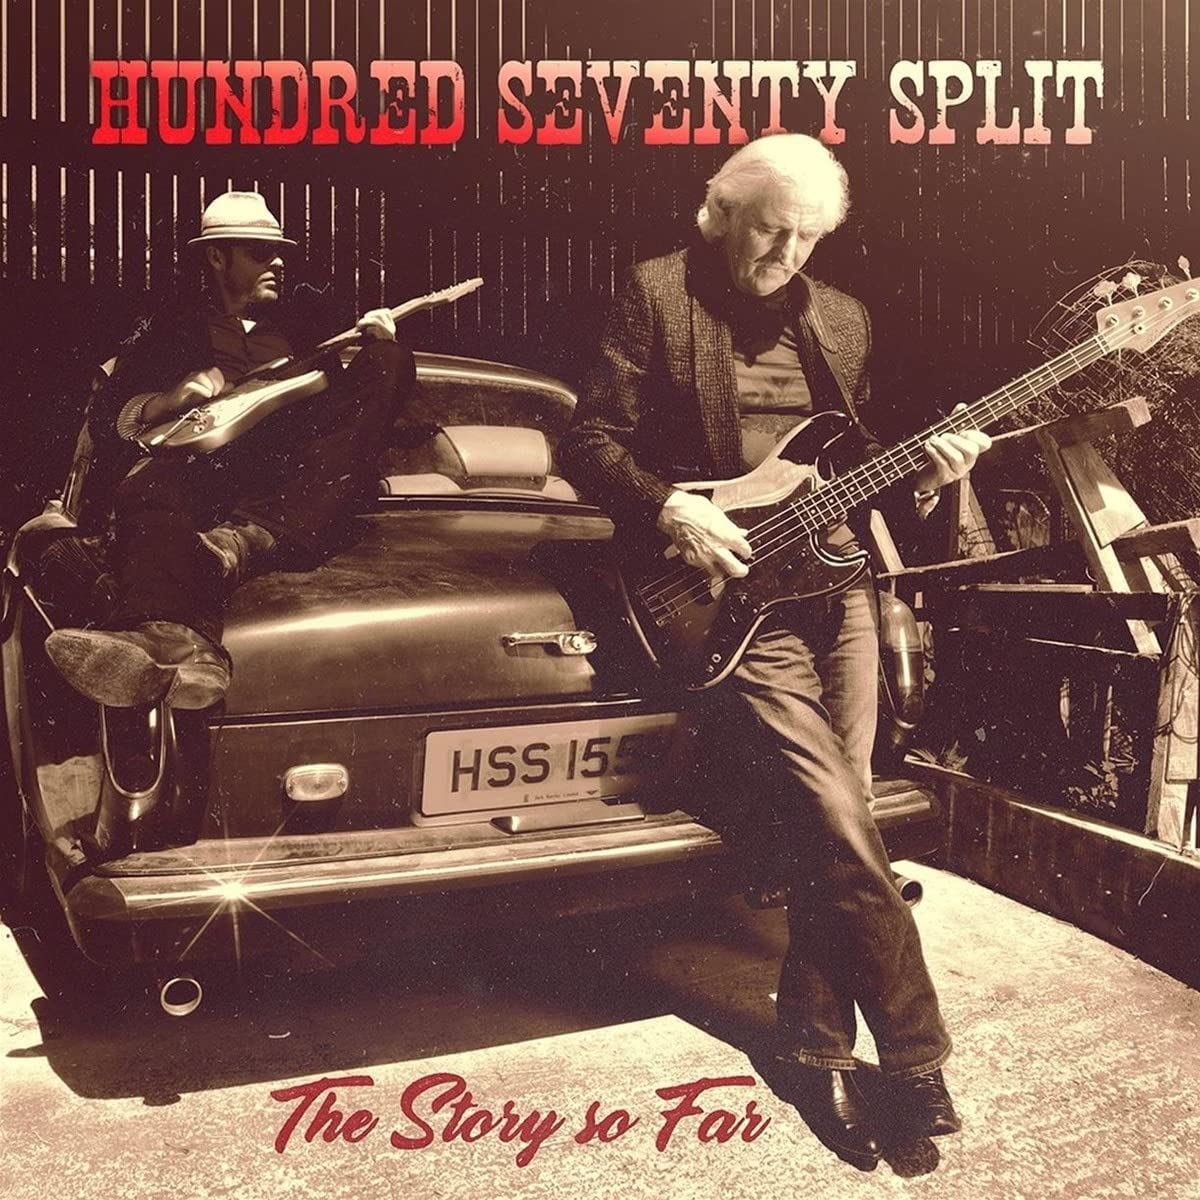 Hundred Seventy Split - The Story So Far